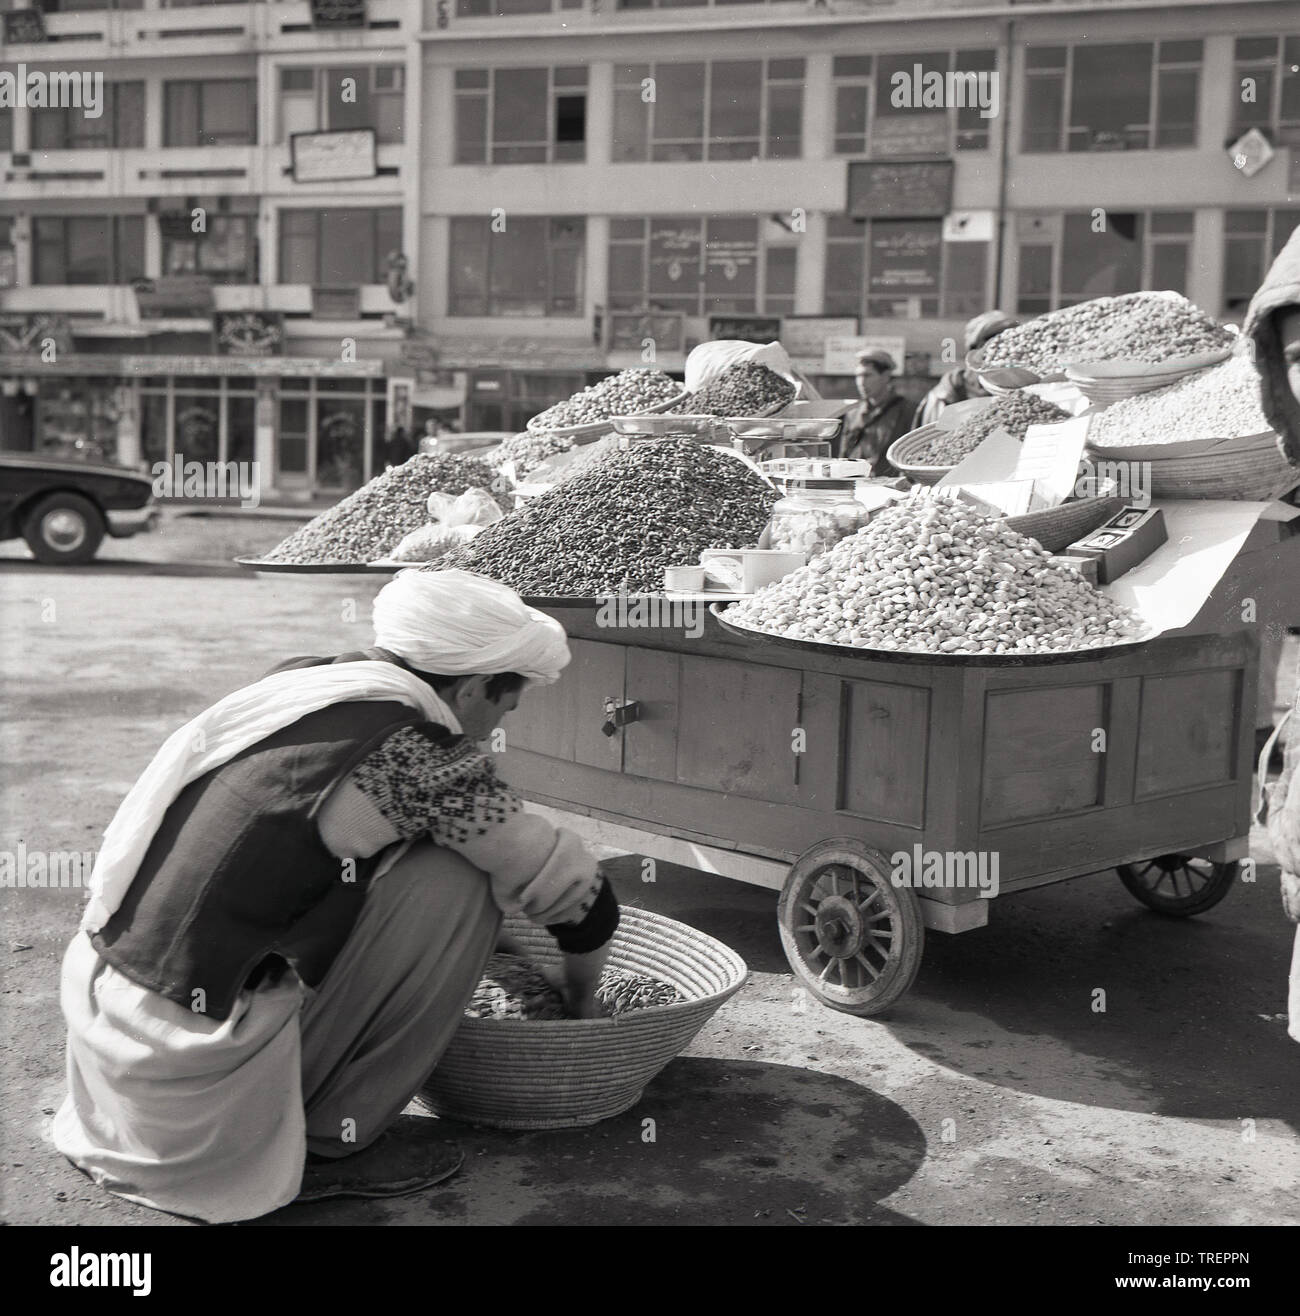 1950s, historique, à l'extérieur d'une rue à Kabal, en Afghanistan, un négociant afghan sur le terrain triant un panier de ses produits, différents types de noix, par sa stalle, un chariot mobile. Banque D'Images